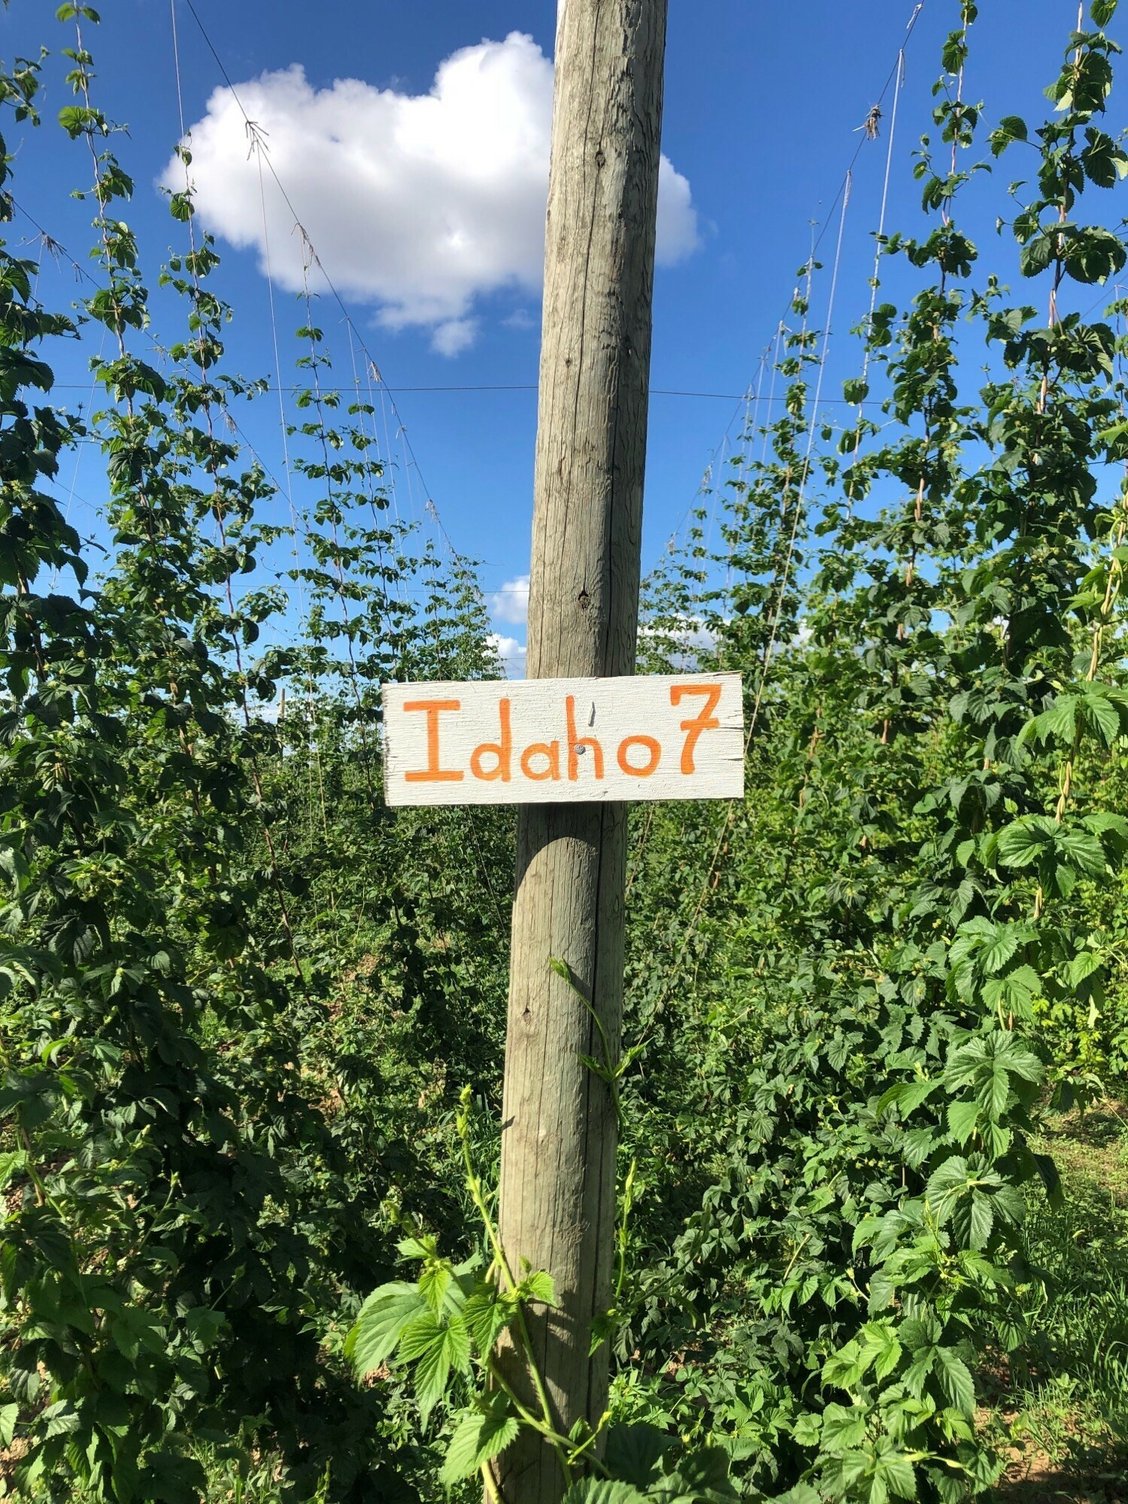 Idaho-7-Sign